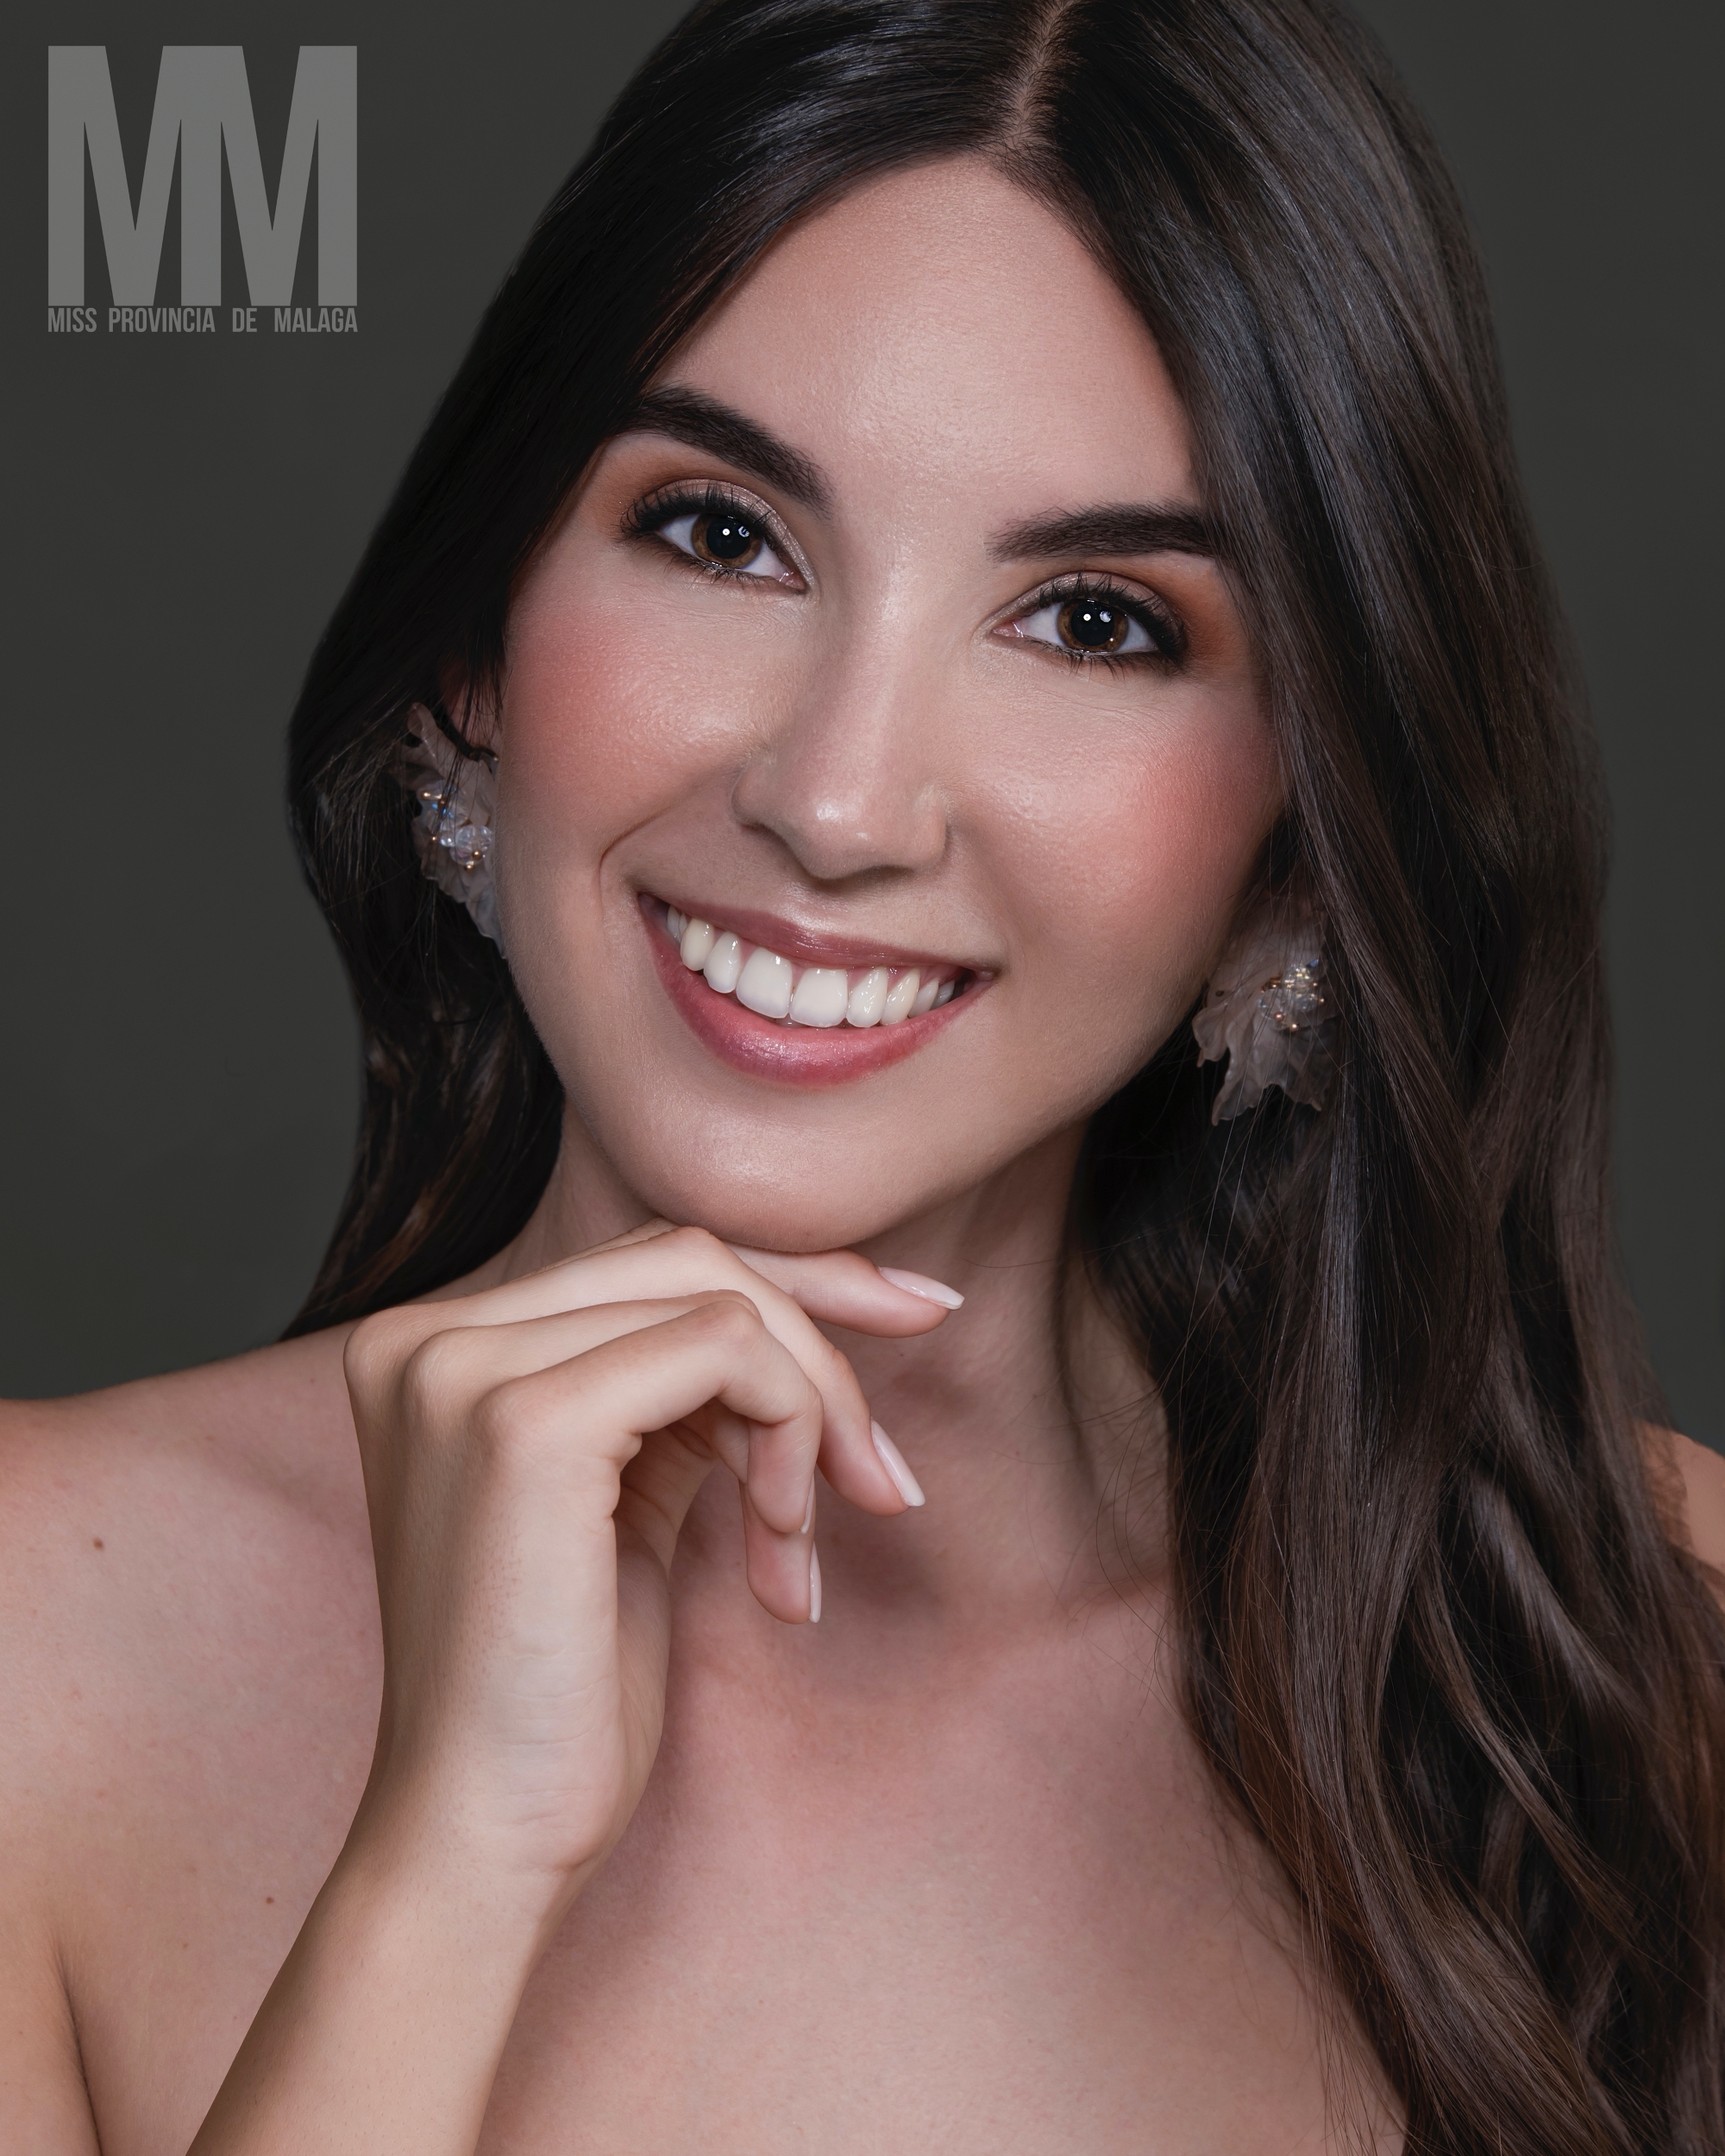 Miss Provincia de Malaga 2022 MISS MARBELLA Jessica Rodriguez 1